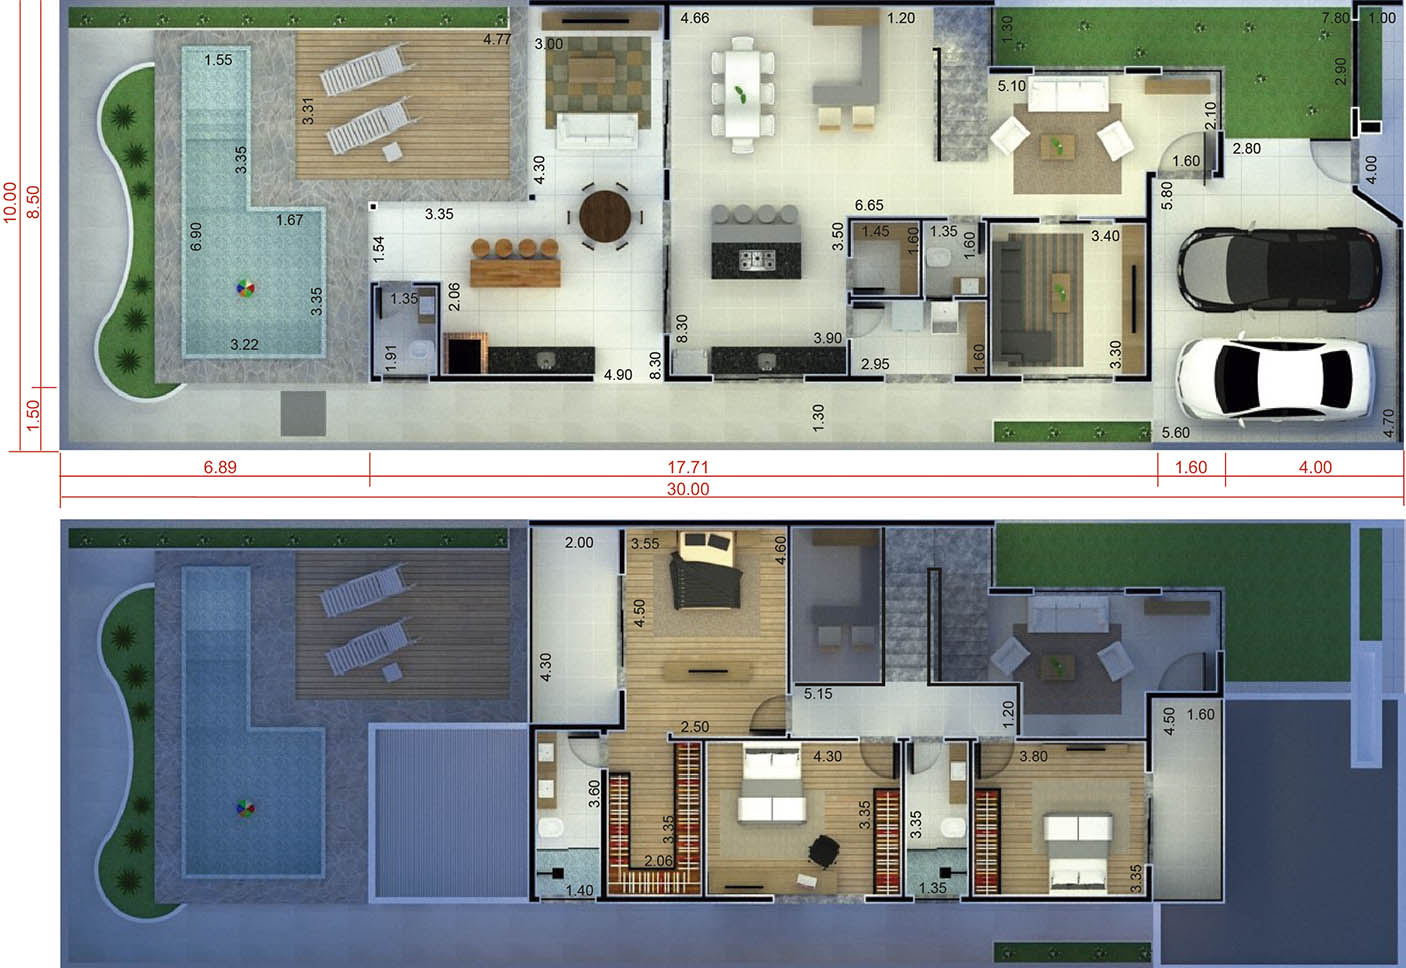 Floor plan with mezzanine in living room10x30